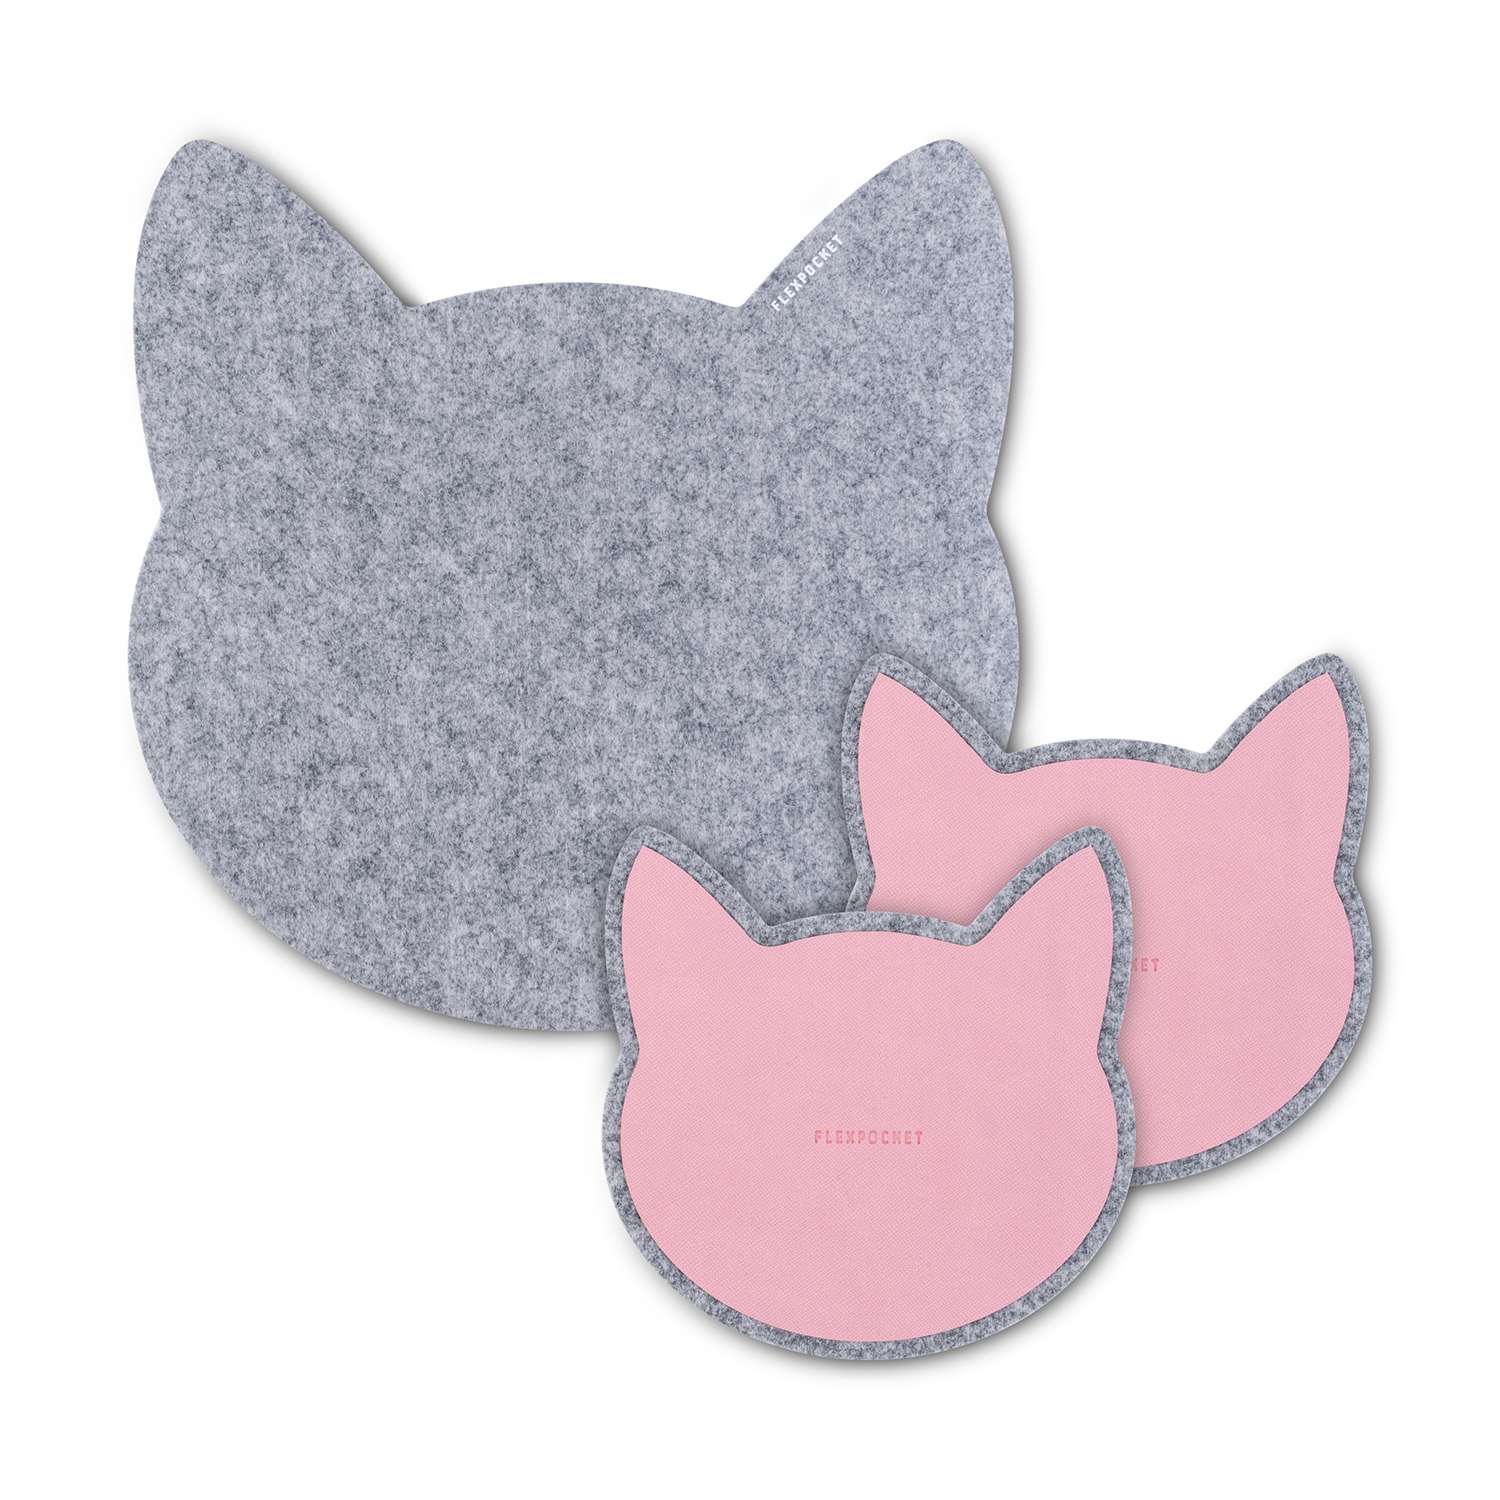 Настольный коврик Flexpocket для мыши в виде кошки + комплект с подставкой под кружку светло-серый - фото 1